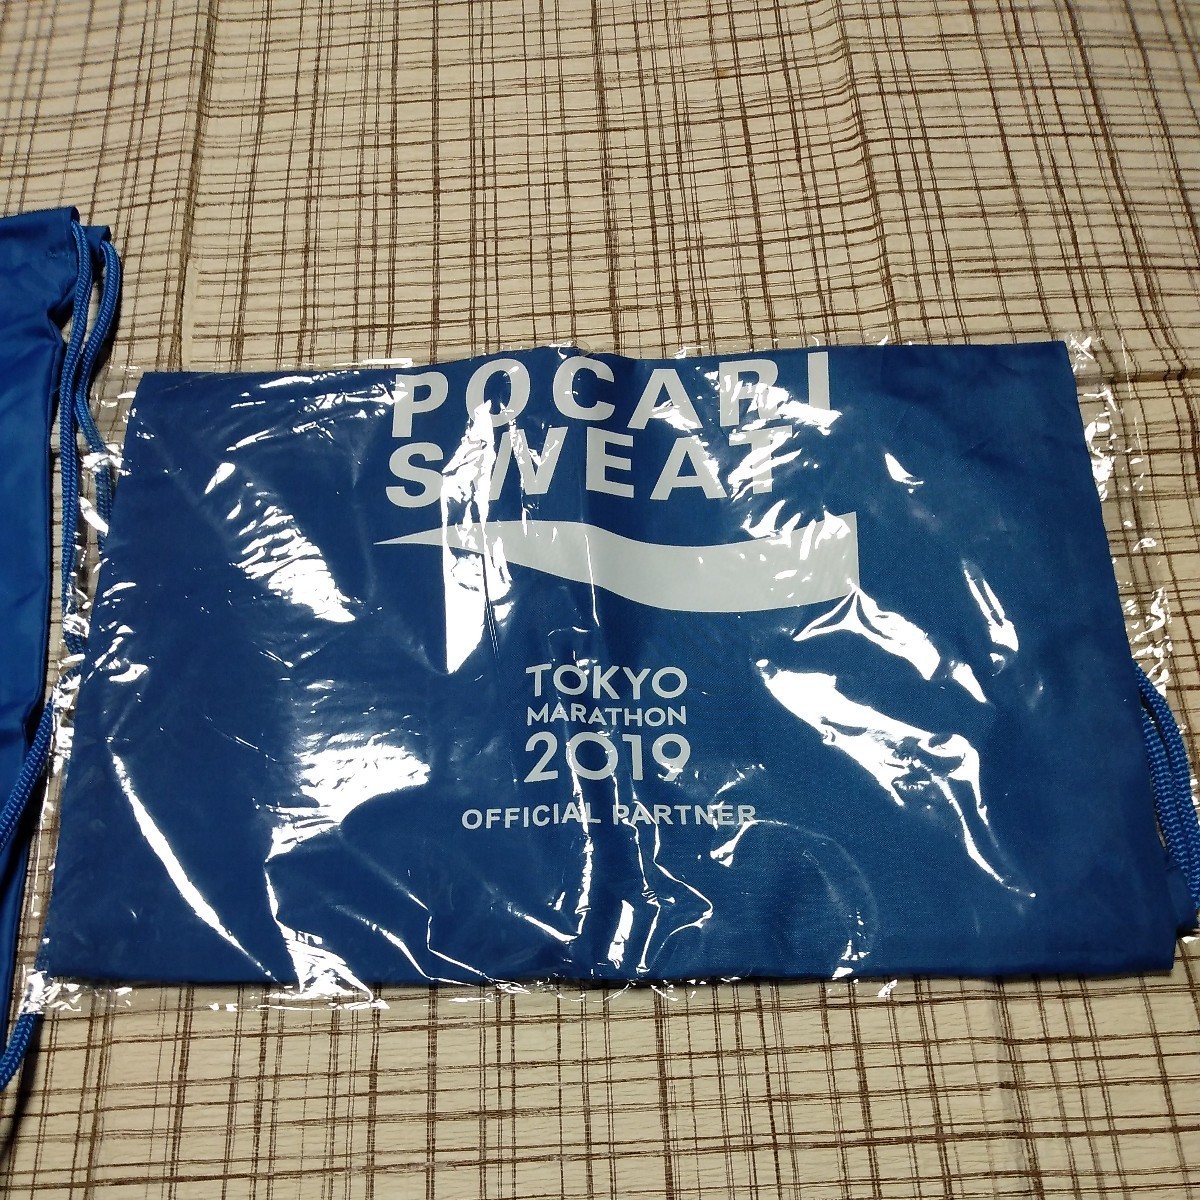 新品 ポカリスエット TOKYO 東京 マラソン 2019 通常品 シューズバッグ ナップザック 巾着 ノベルティー 2枚 リストバンド セット_画像3